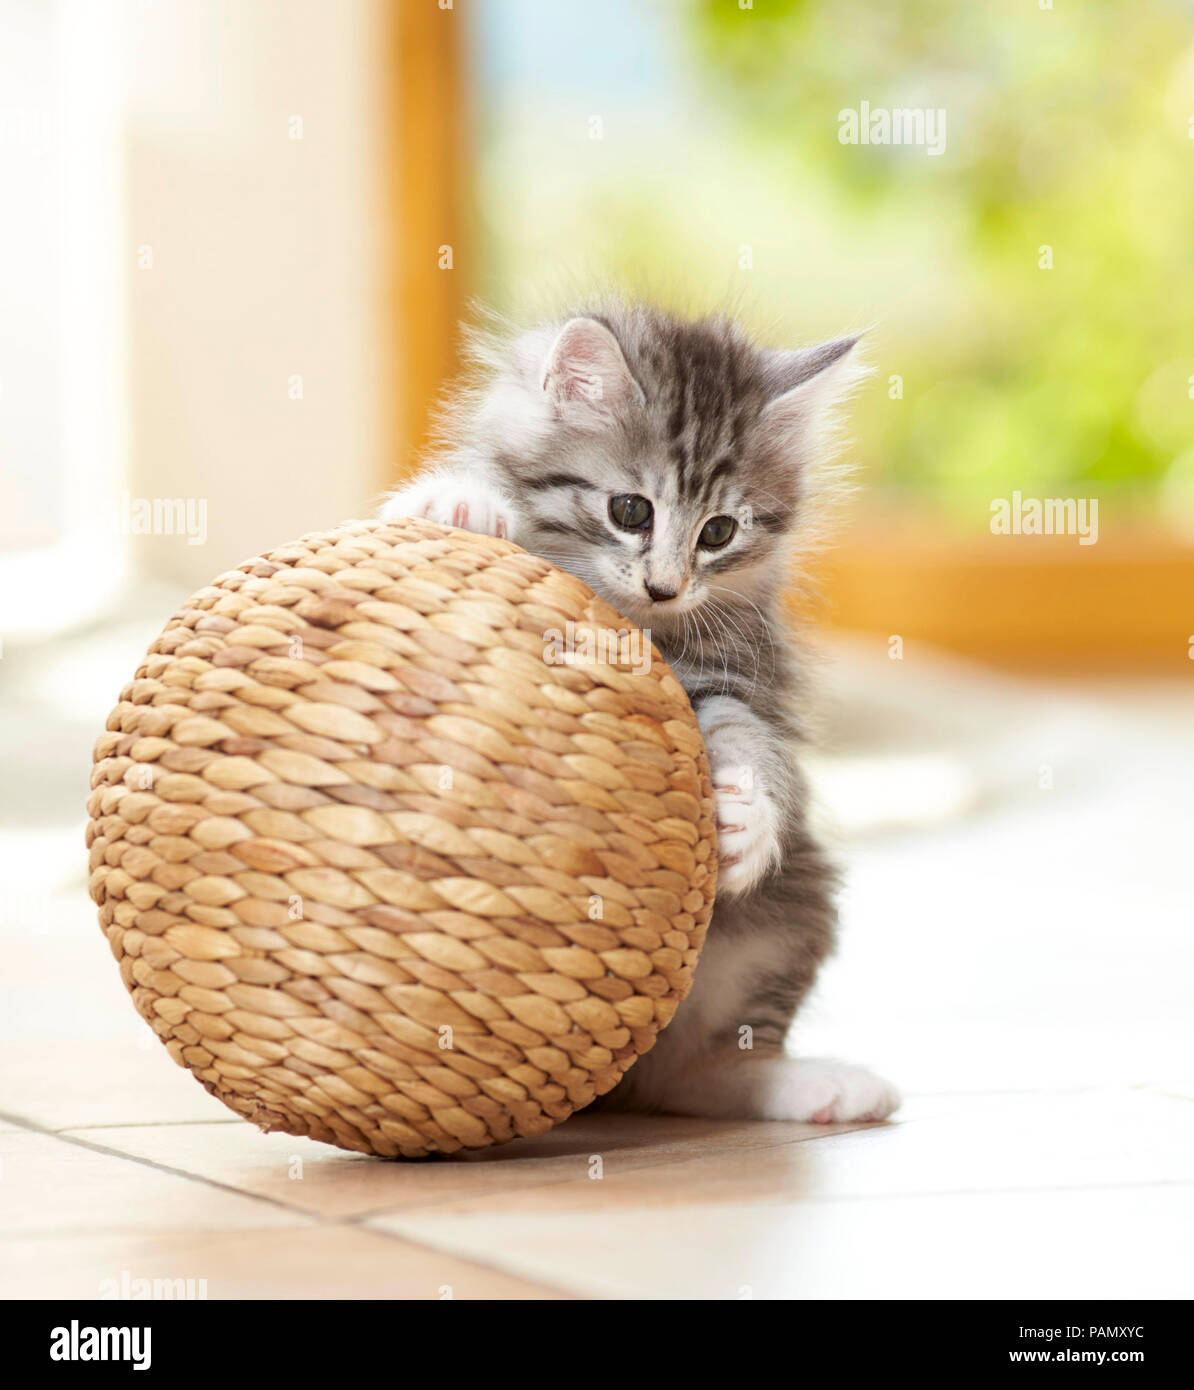 Norwegian Forest cat. Chaton jouant avec une balle. Allemagne Banque D'Images